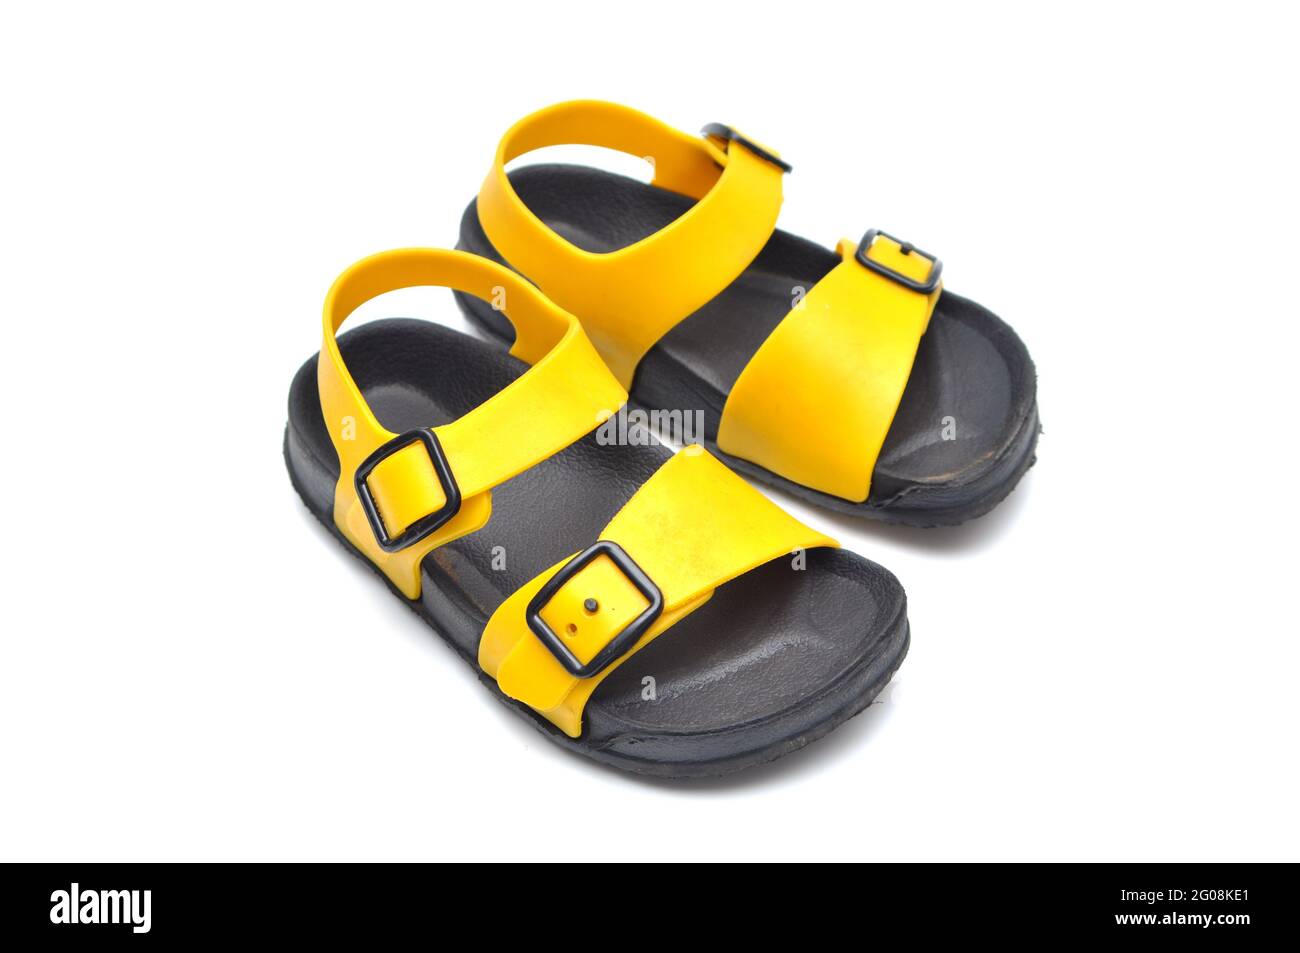 Schwarze und gelbe Kinder-Sandalen aus Gummi Stockfotografie - Alamy